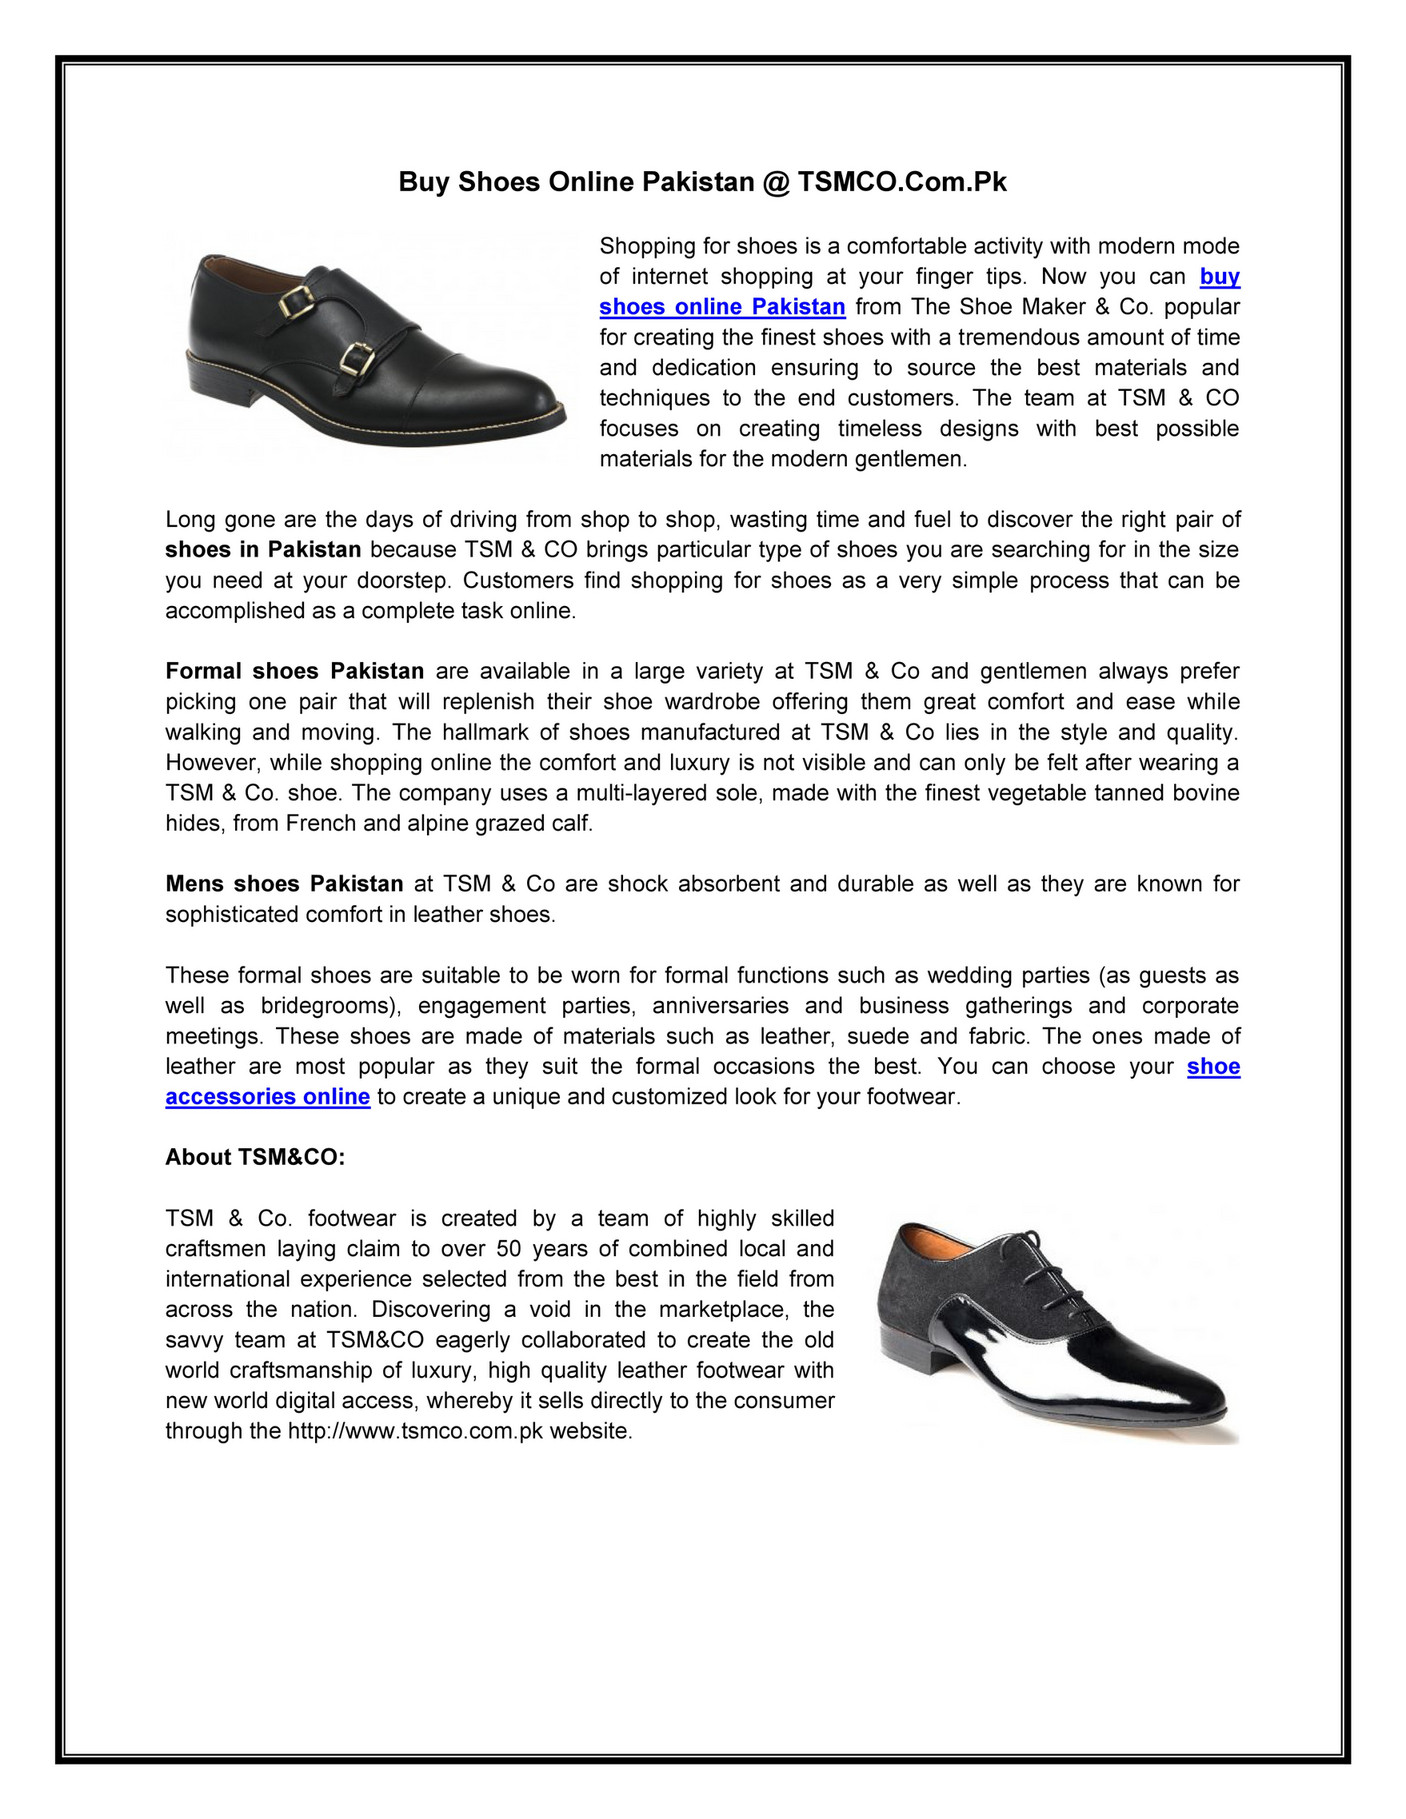 shoe maker website